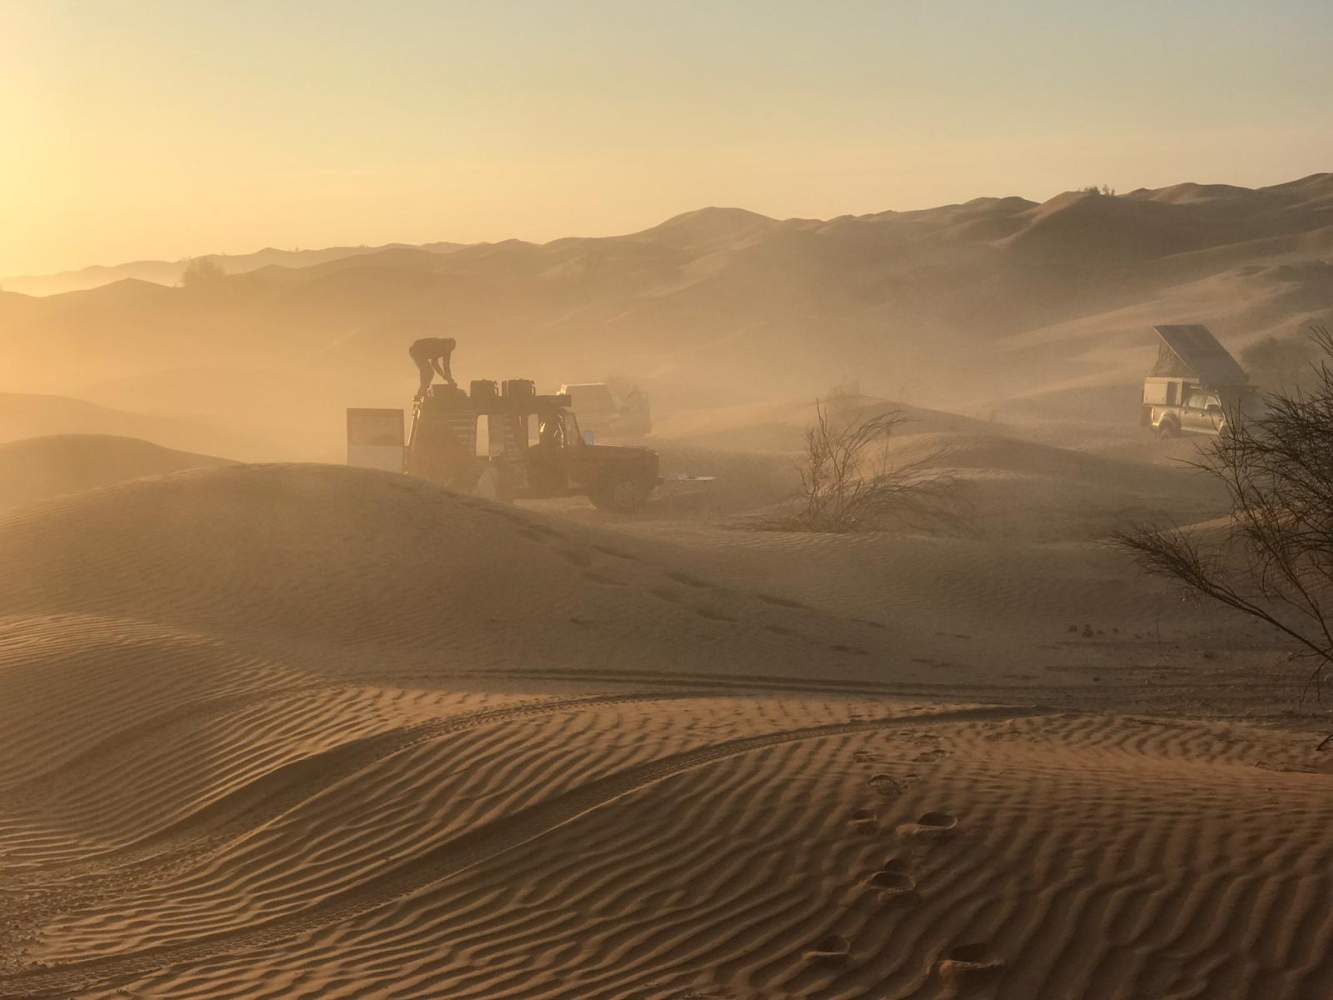 Aufbau des Camps während eines Sandsturms bei Sonnenuntergang